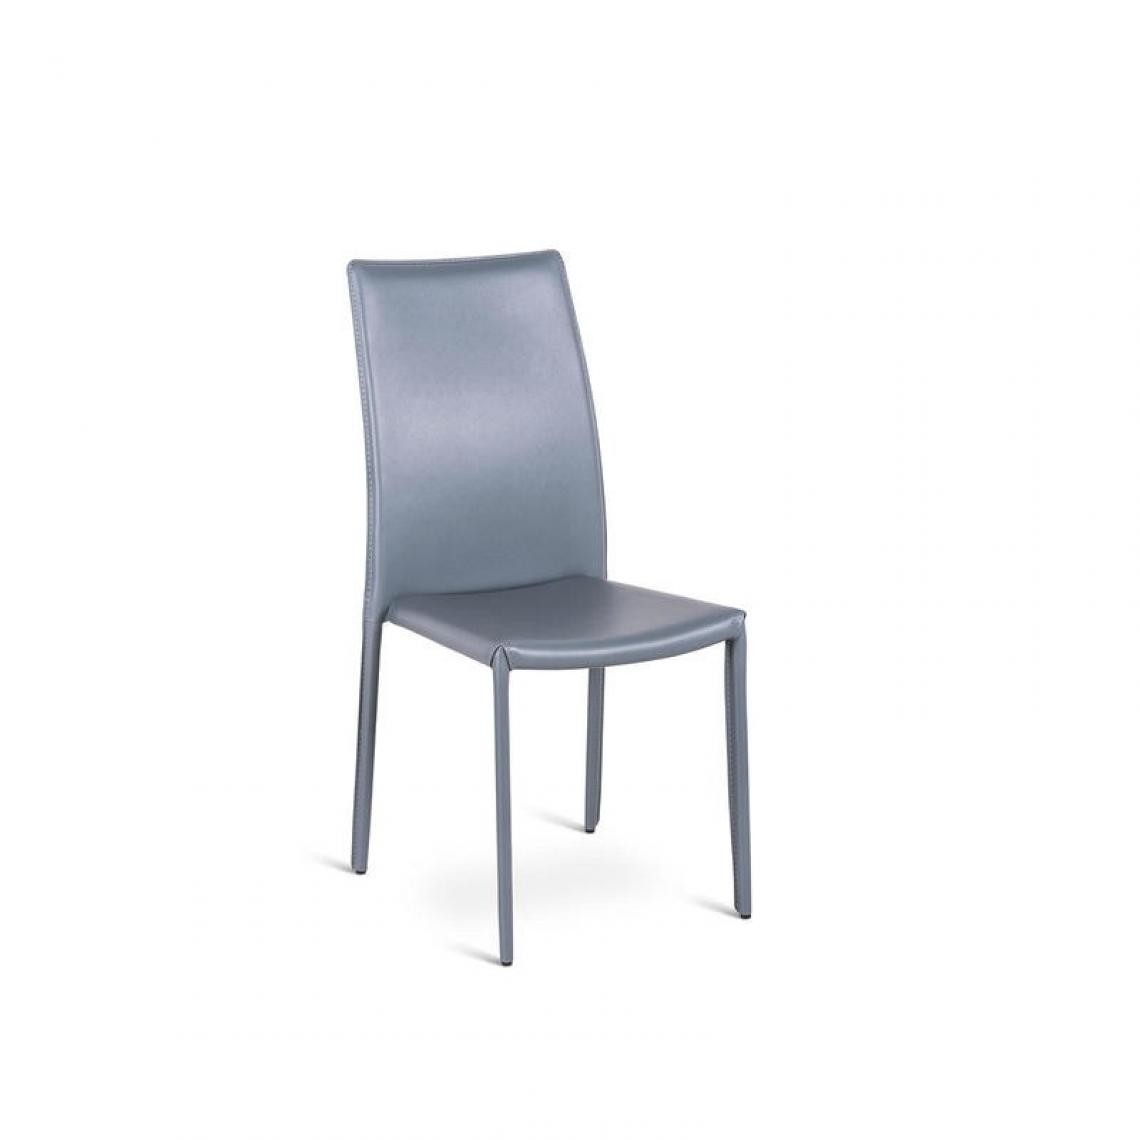 Webmarketpoint - Chaise en similicuir gris foncé, structure en métal recouvert 41x42xh.95 cm - Chaises